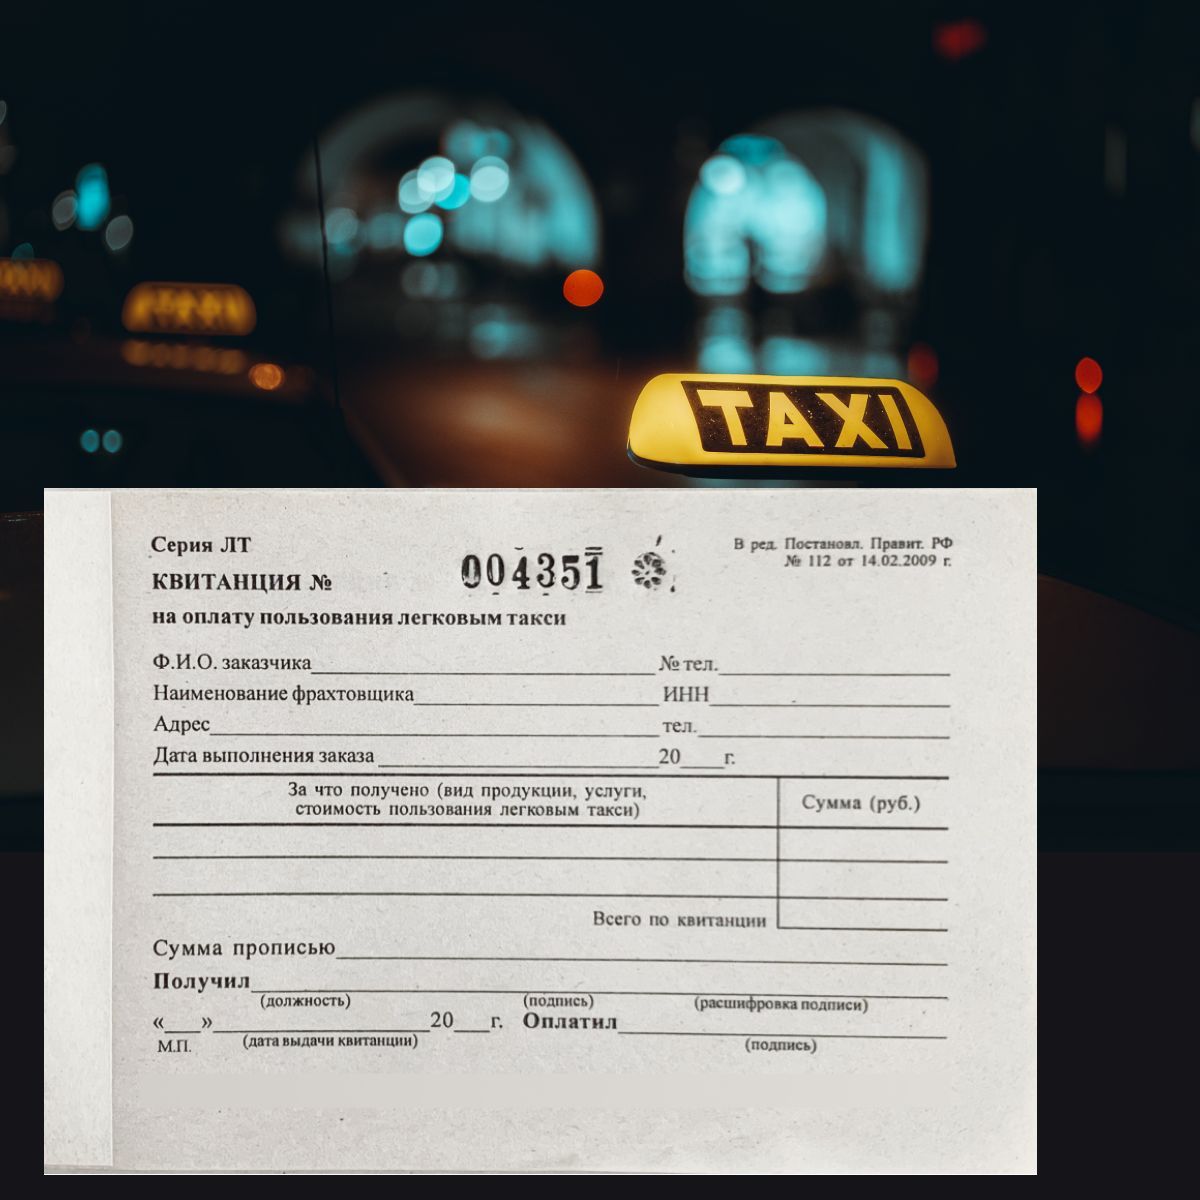 Реестр легкового такси москва. Квитанция на оплату пользования легковым такси. Условия оплаты за пользование легковым такси.